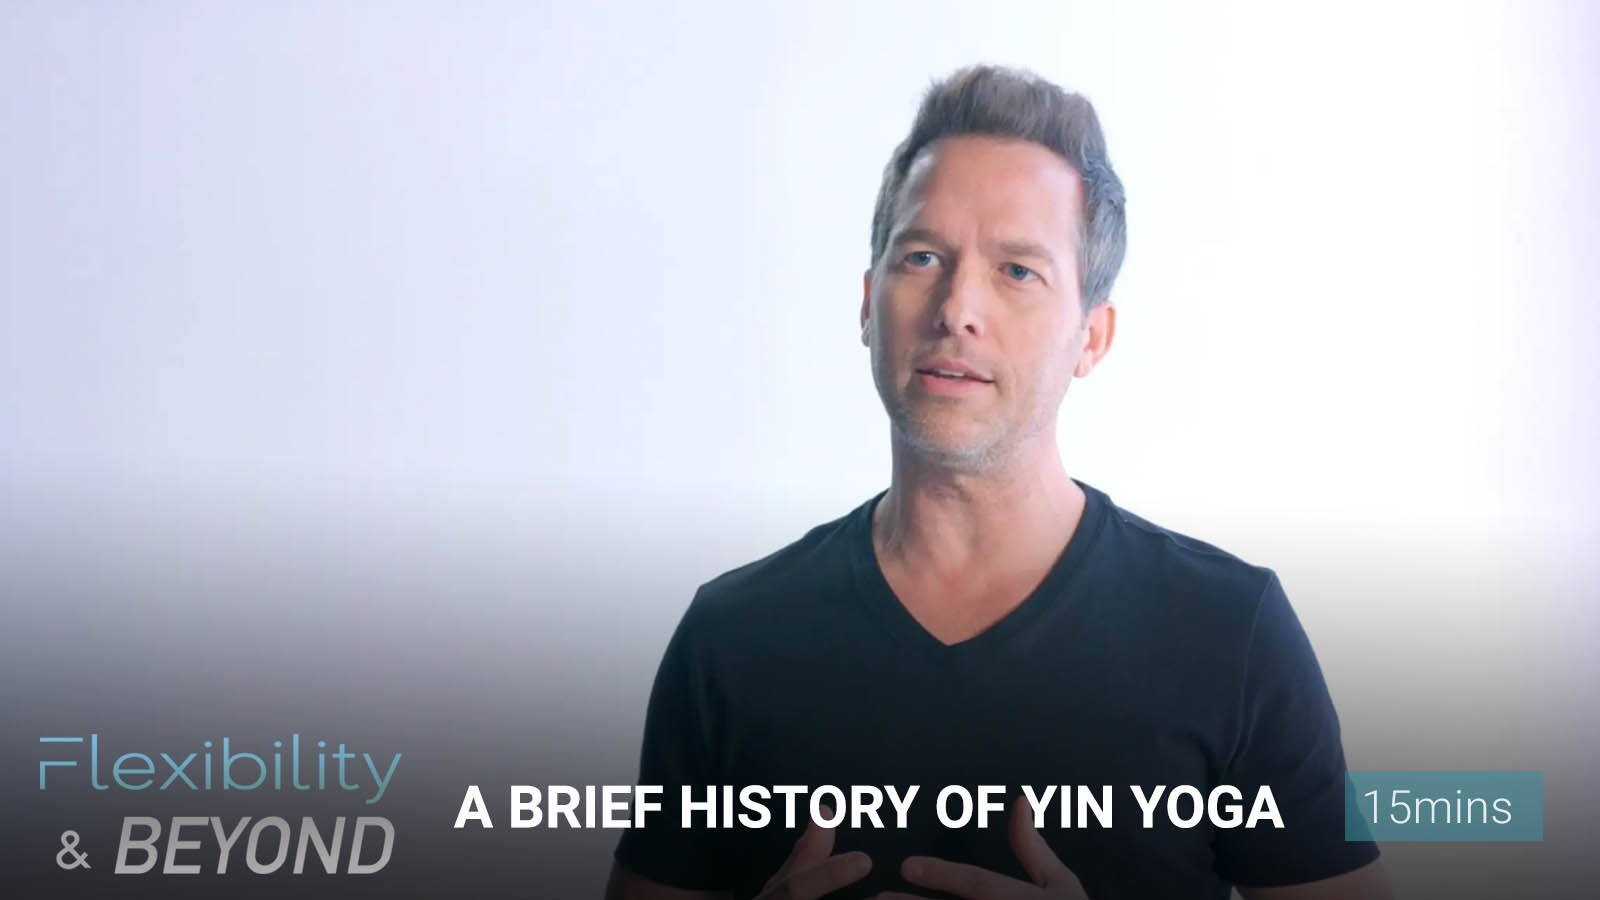 .History of <b>Yin Yoga</b>.